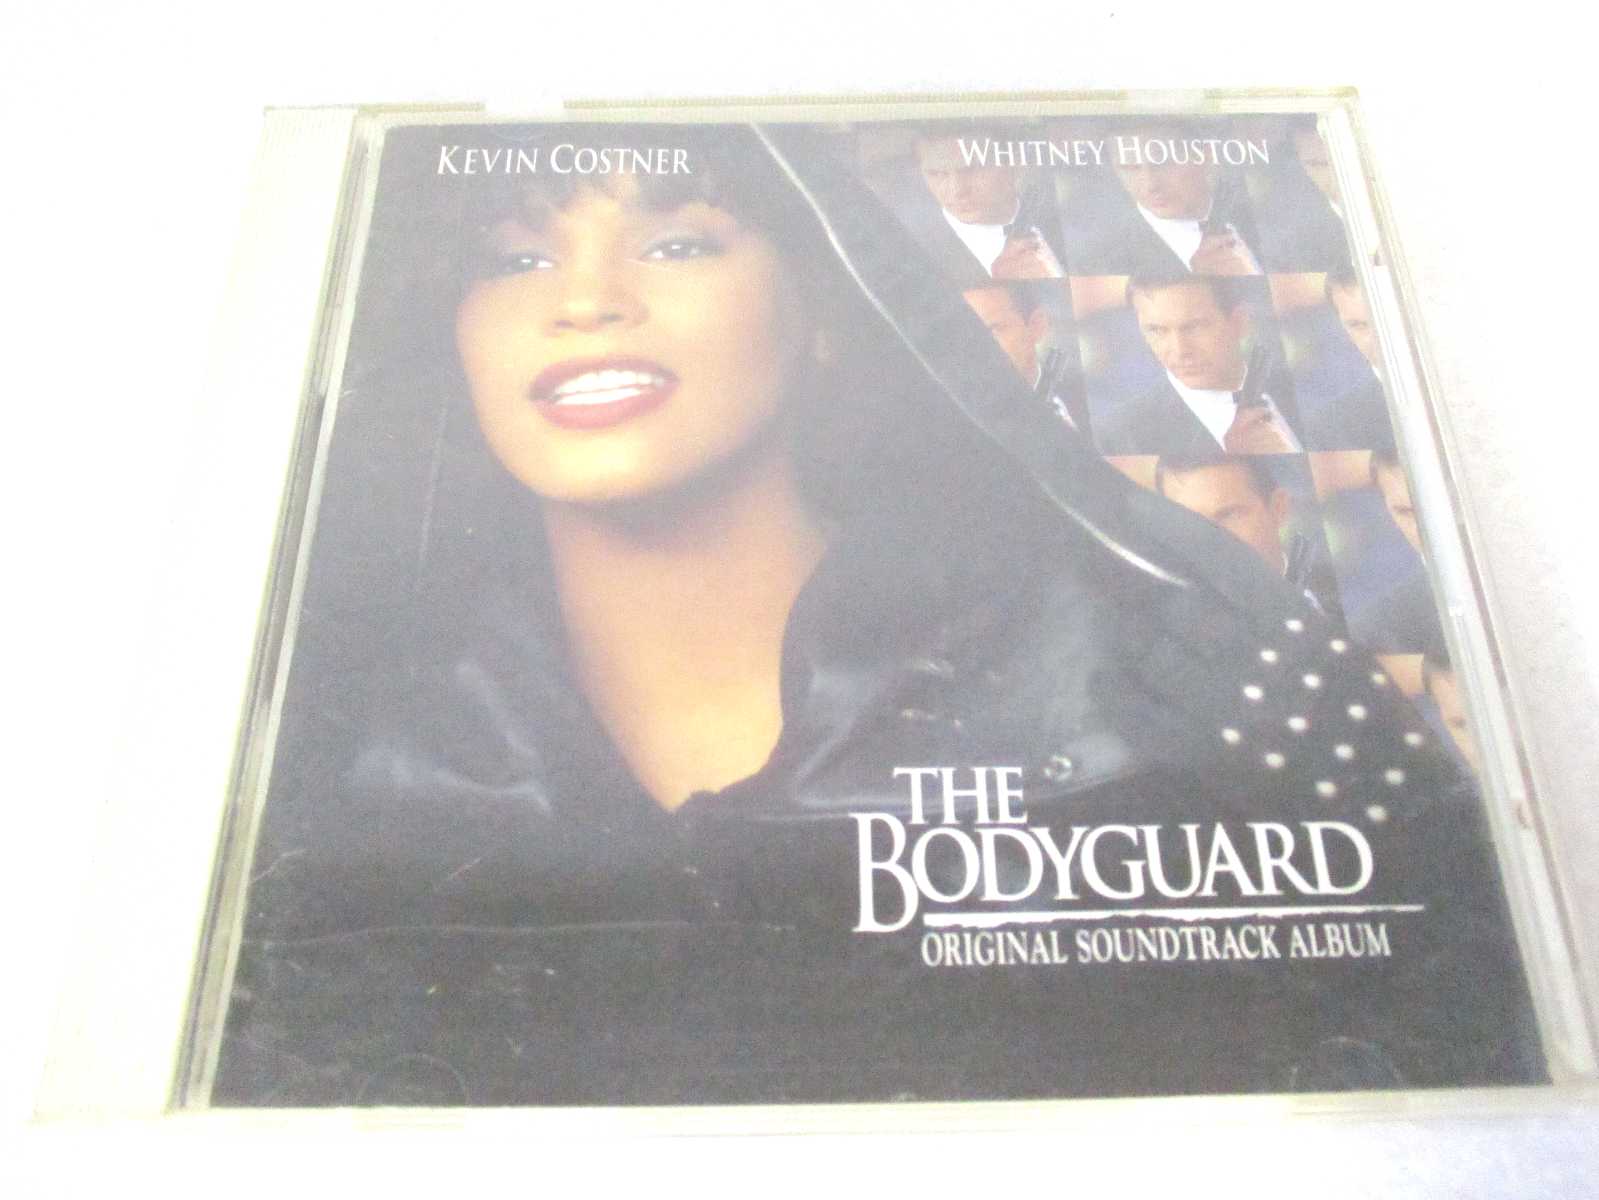 AC00843 š CD THE BODYGUARD ORIGINAL SOUNDTRACK ALBUM